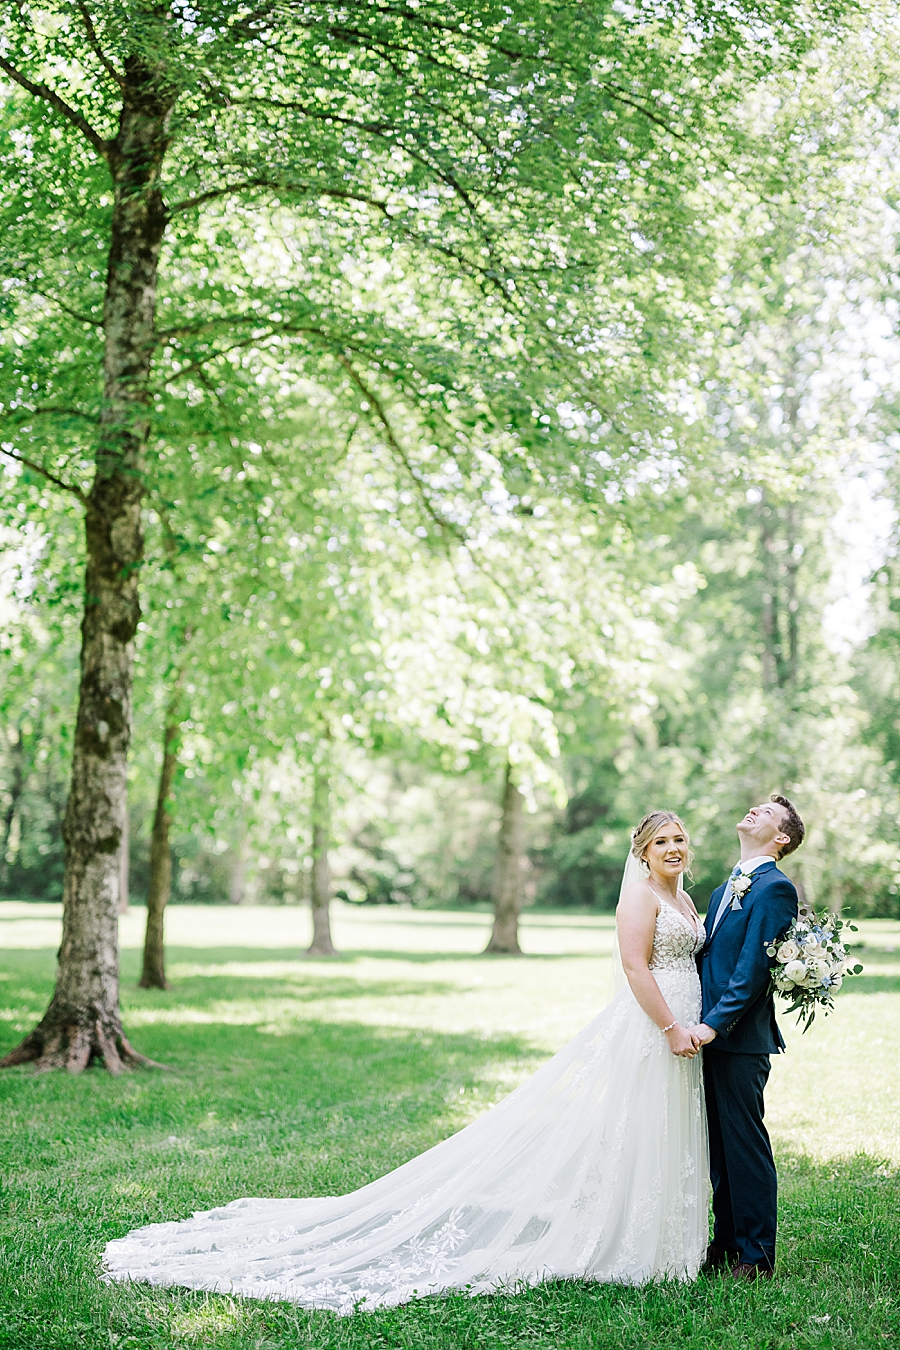 Laughing together at Ramble Creek wedding by Amanda May Photos